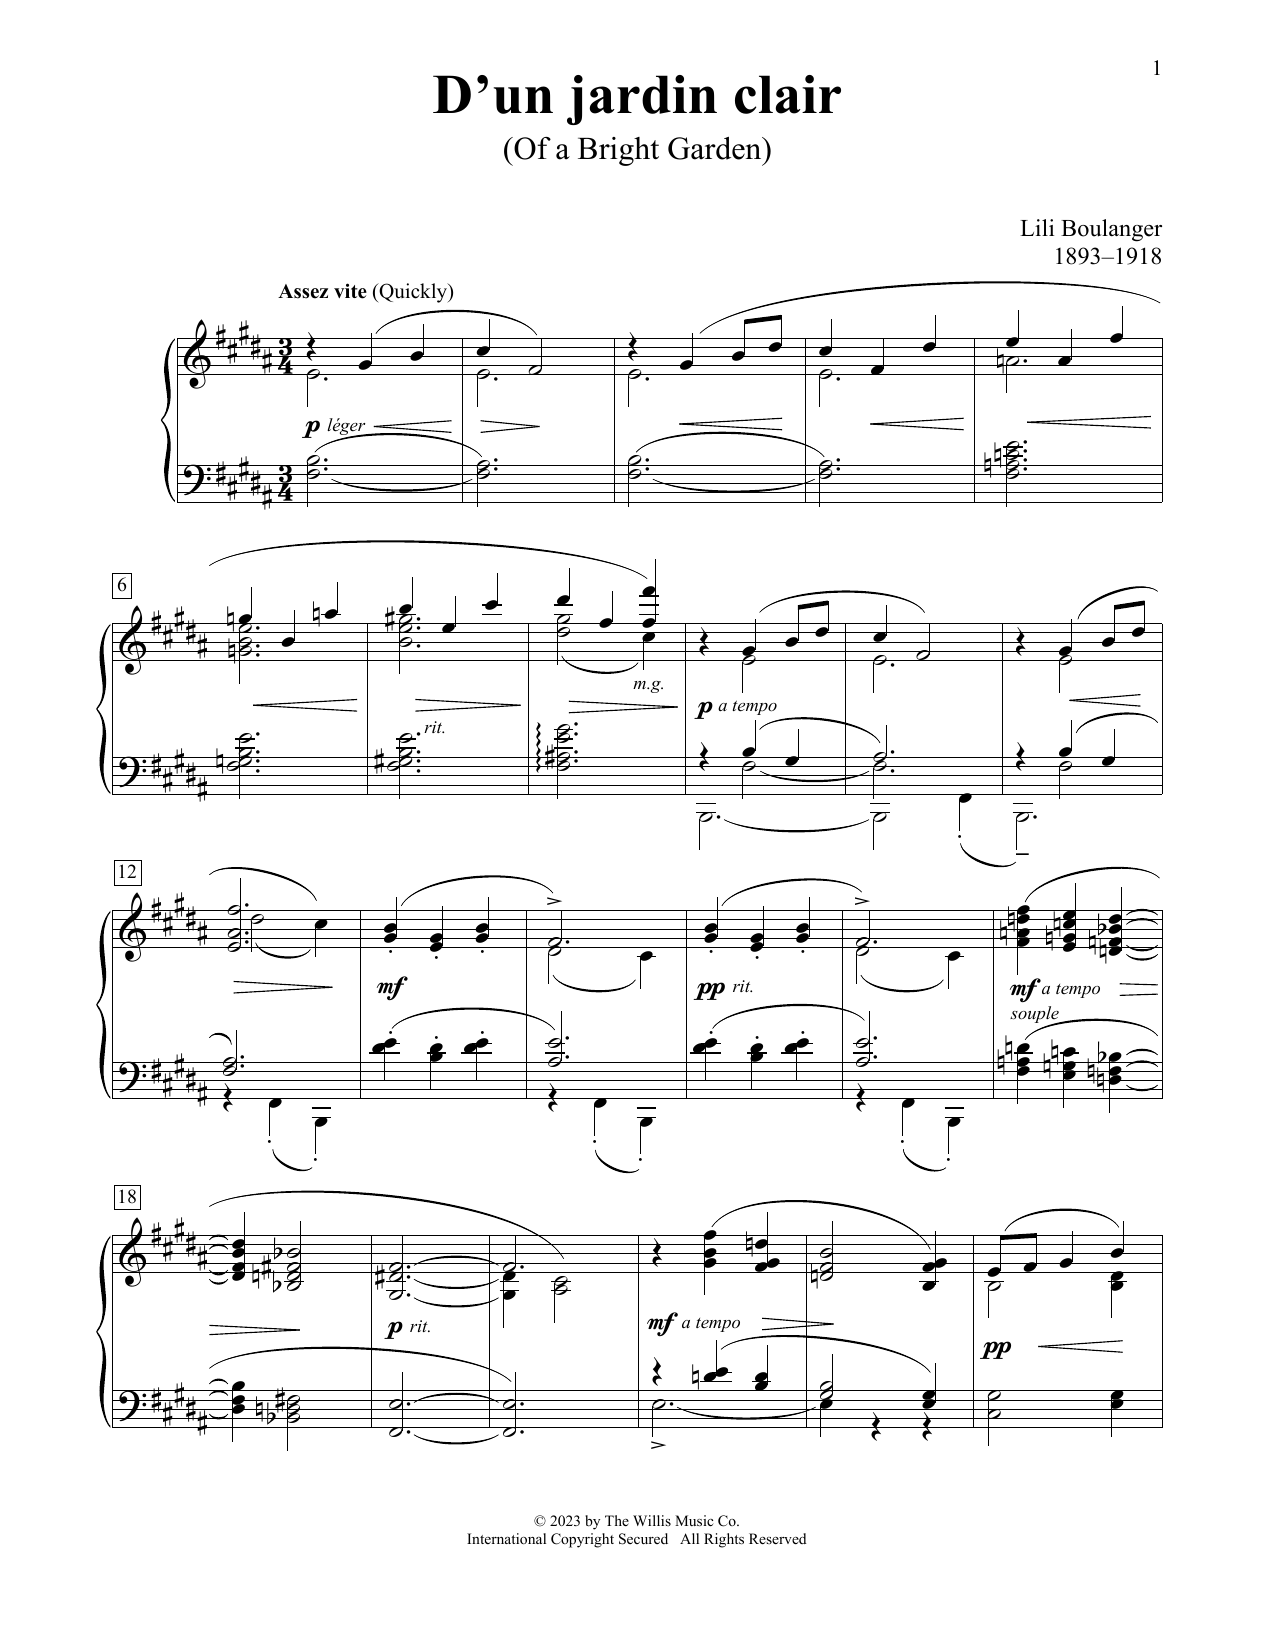 Lili Boulanger D'un Jardin Clair sheet music notes printable PDF score